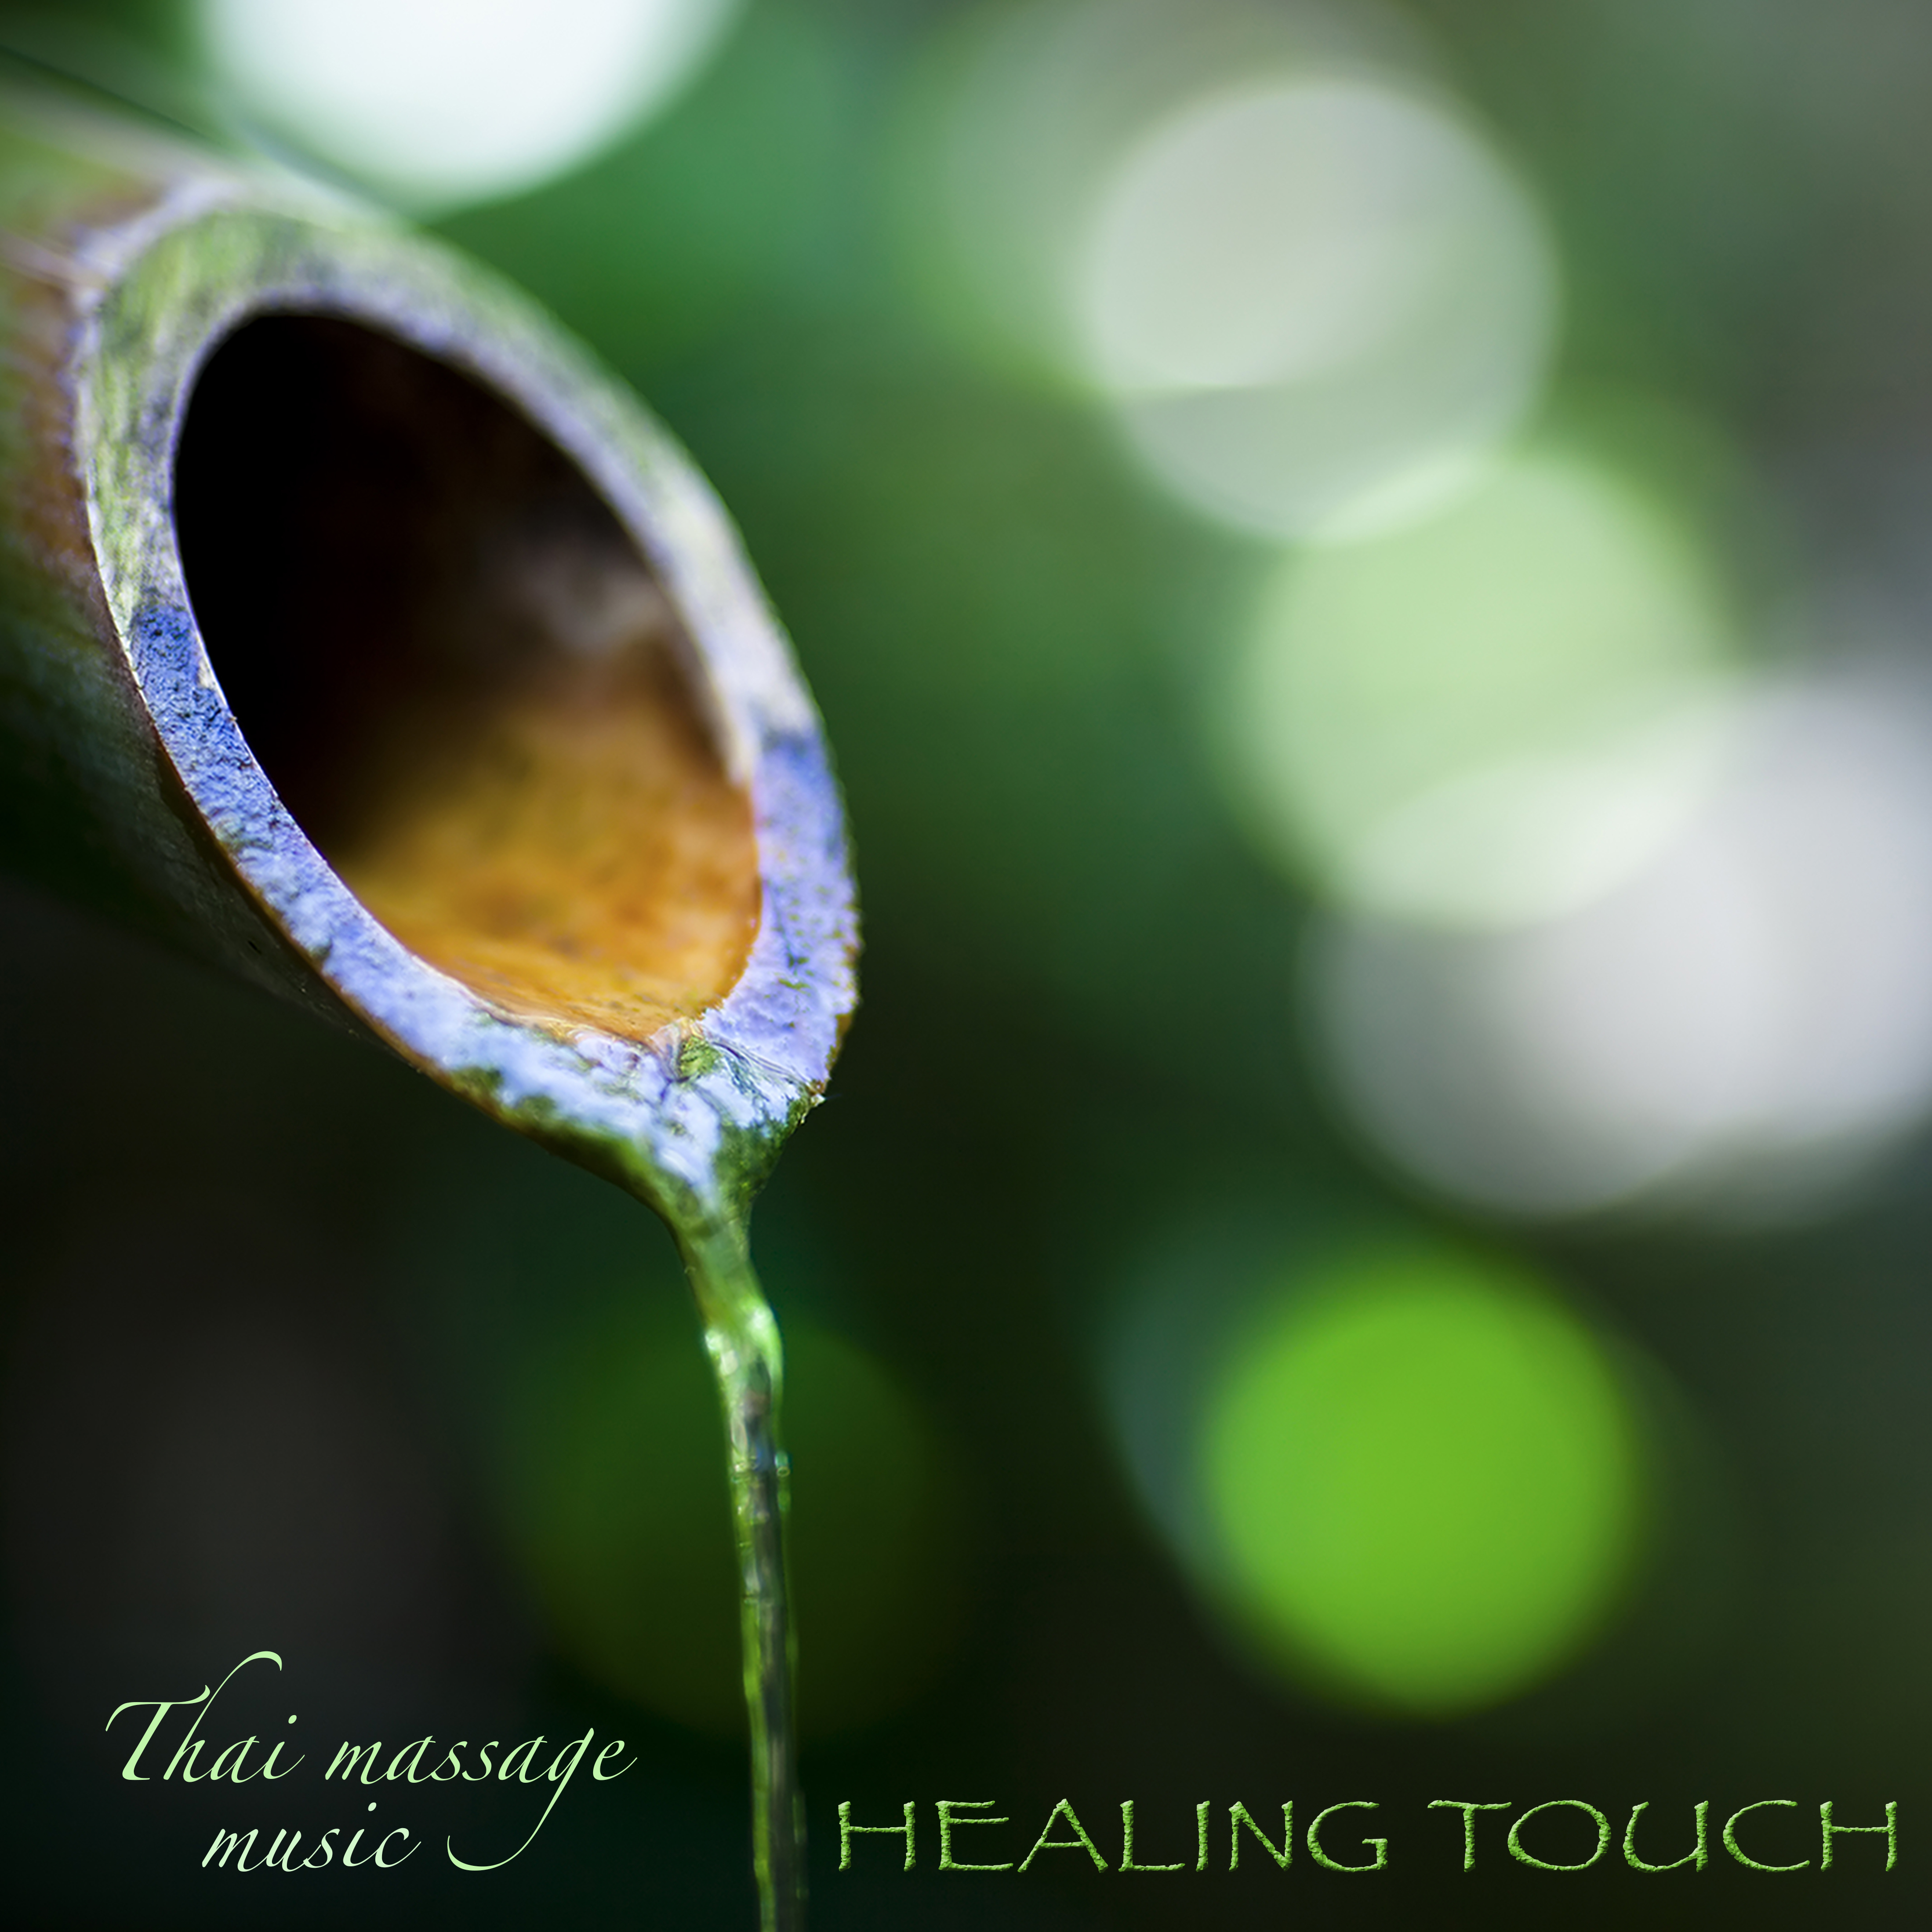 Healing Touch Thai Massage Music – Relaxing Zen Music for Massage, Beauty Spa & Deep Relaxation